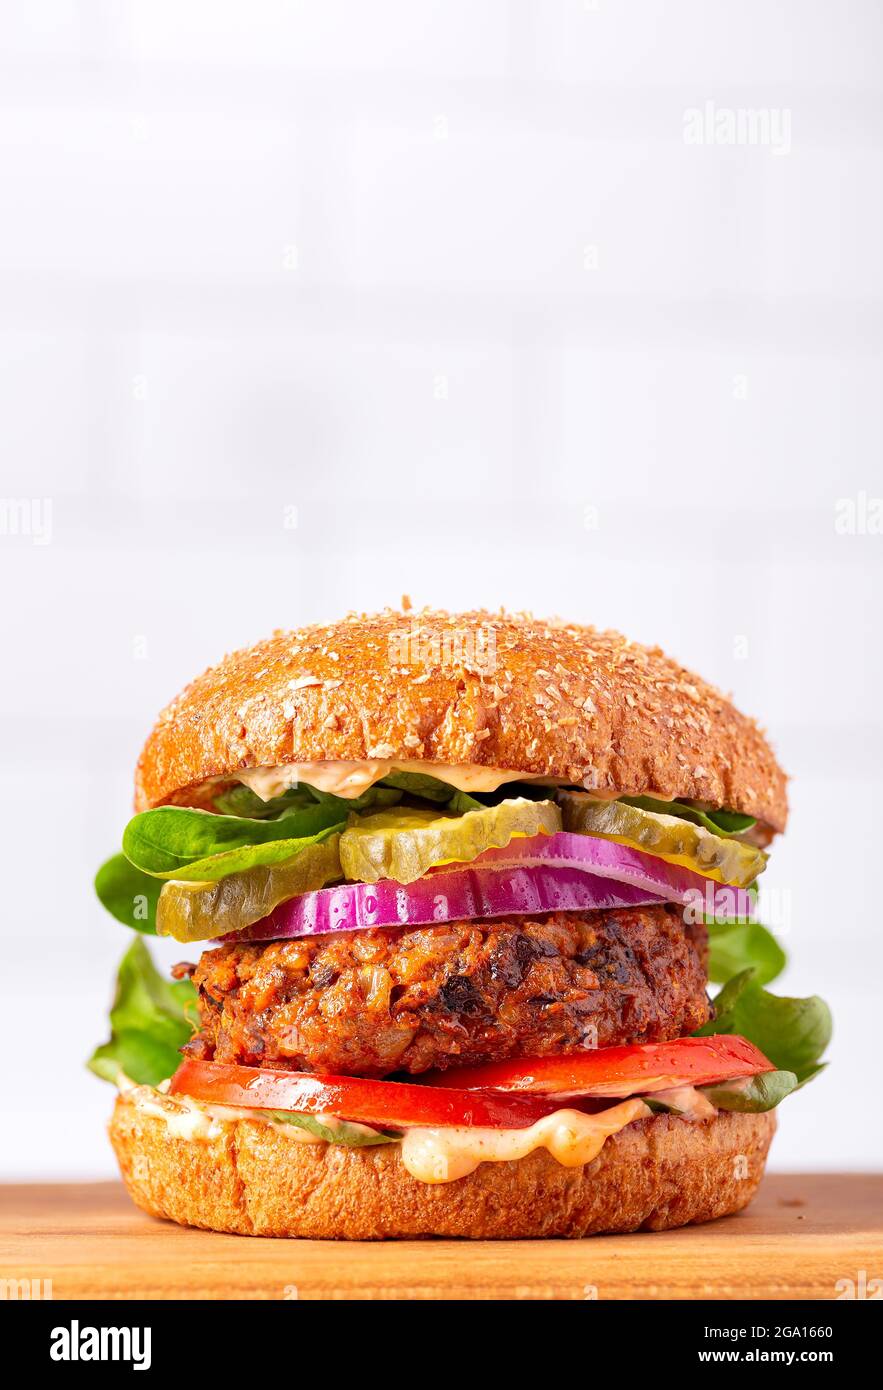 Hamburger fatto in casa a base di piante a base di patate dolci, fagioli neri e riso bruno su un panino integrale brioche; spazio copia Foto Stock